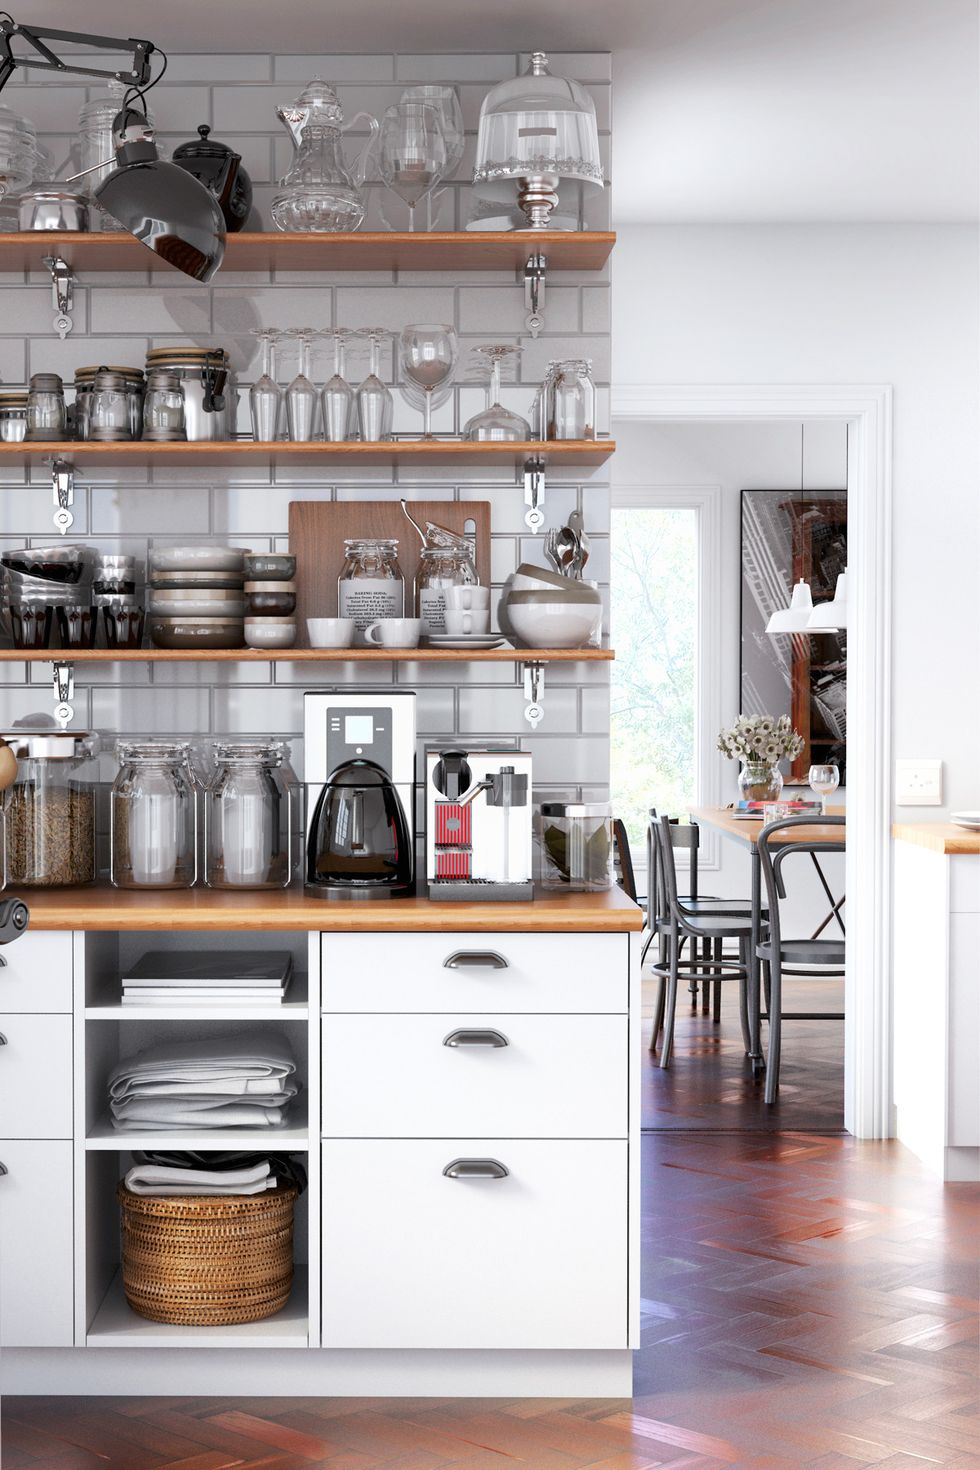 10 Best Kitchen Cabinet Organizers for Extra Storage - Drew & Jonathan